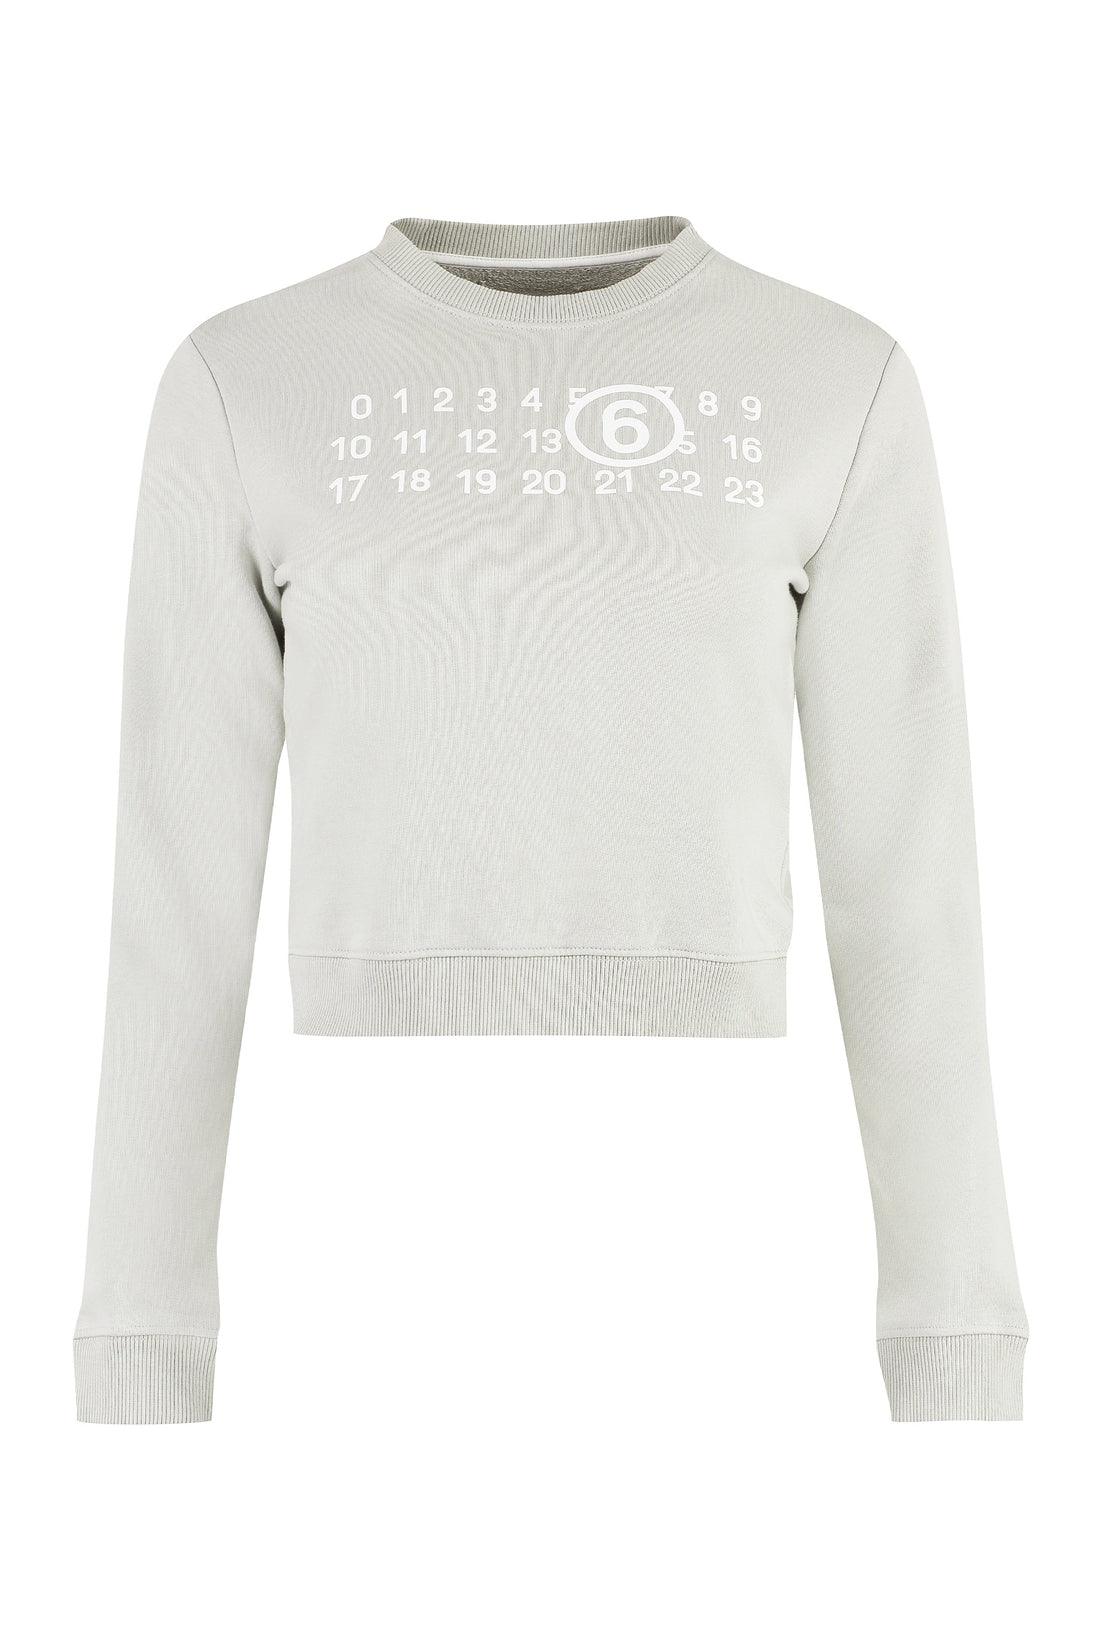 MM6 Maison Margiela-OUTLET-SALE-Logo detail cotton sweatshirt-ARCHIVIST